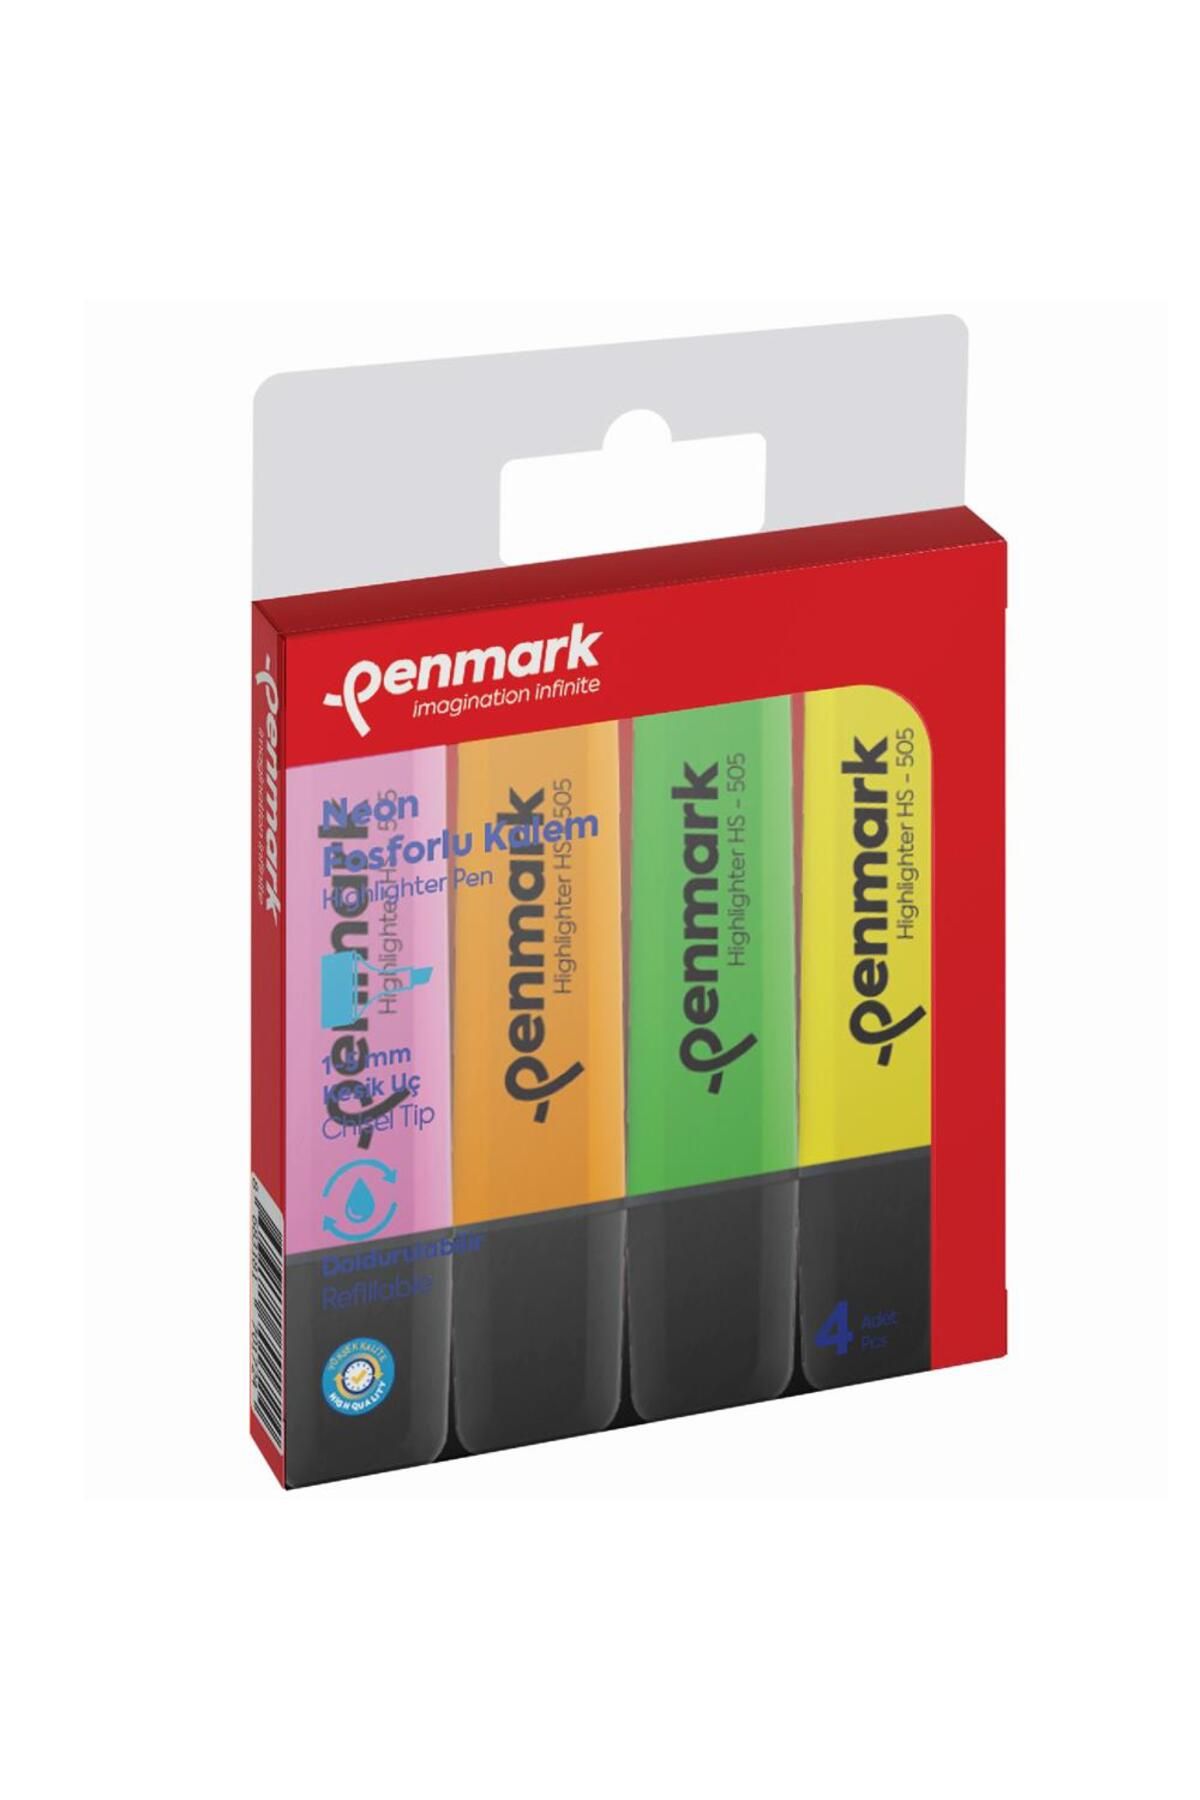 penmark Fosforlu Kalem 4 Lü Karışık Renk Neon Işaretleme Kalemi (24 ADET 4 LÜ PAKET)